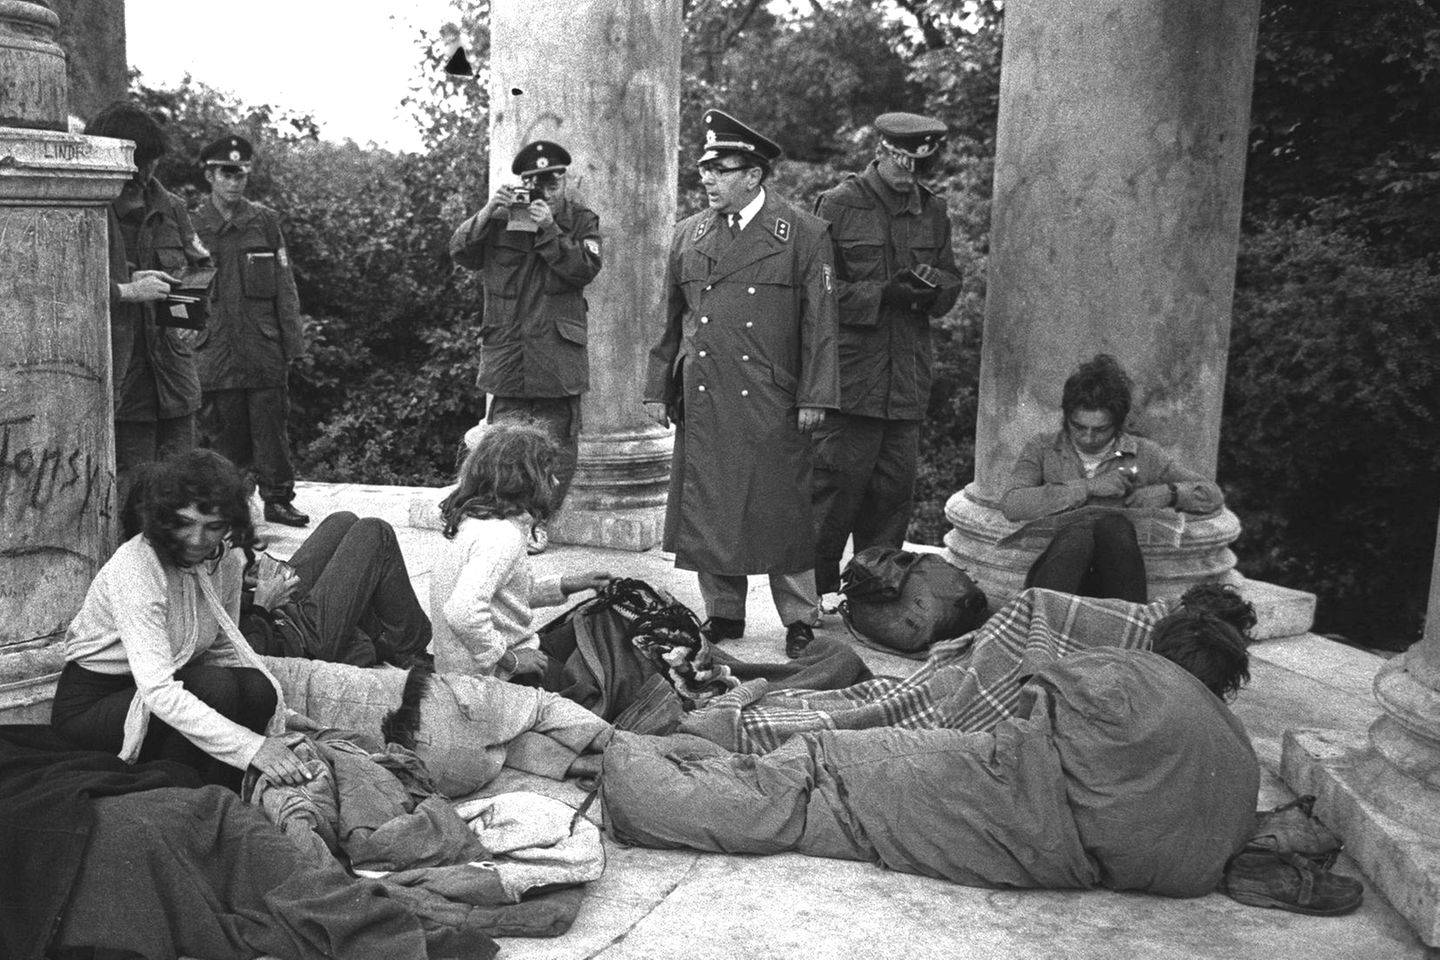 Die Staatsmacht geht gegen "Hippies" vor: Die Polizei, hier 1969 in München, stellt bei einer Razzia Rauschgift sicher und löst die Gruppierung auf